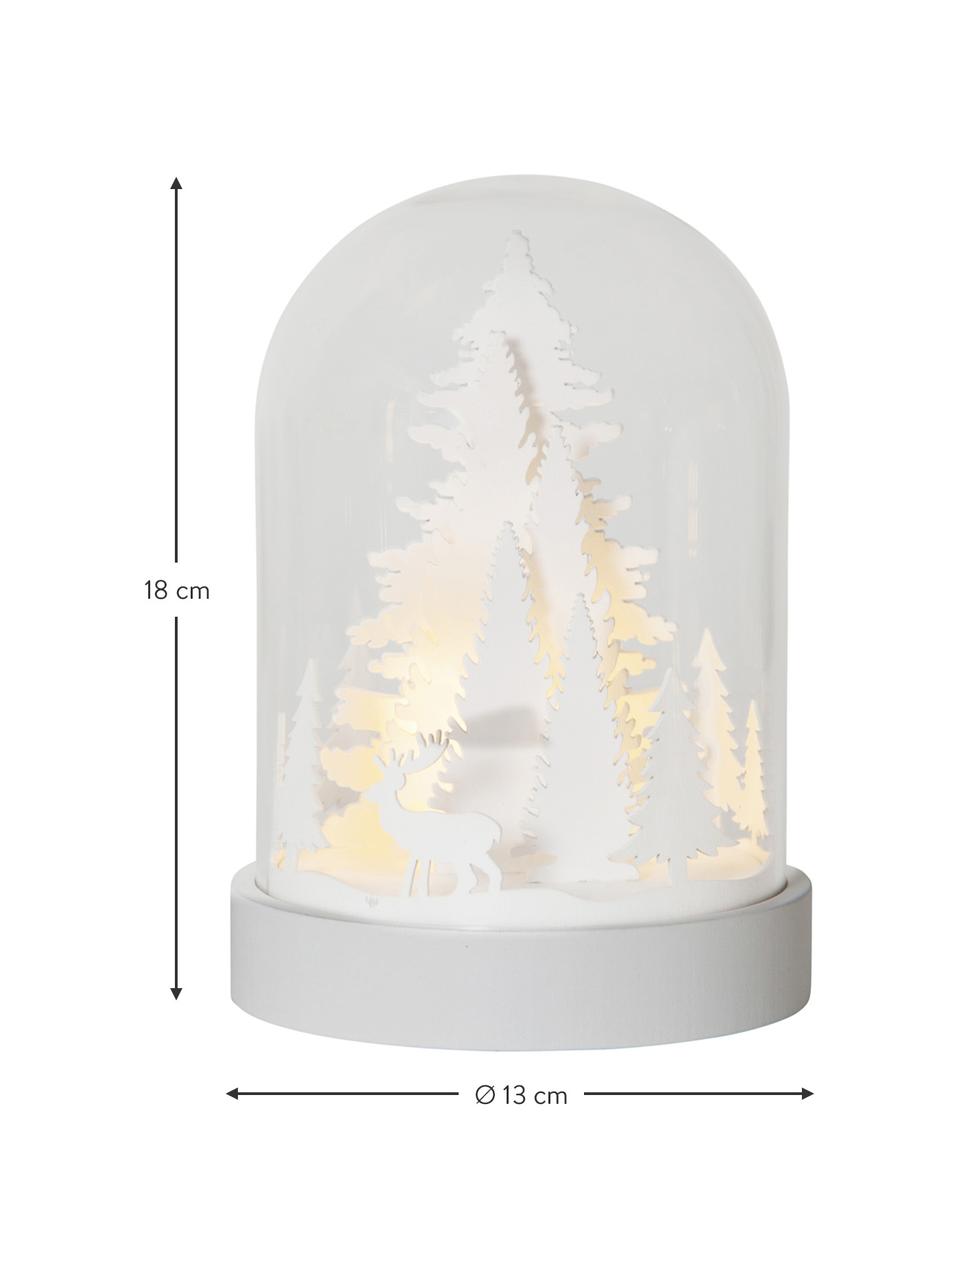 Svítící LED dekorace na baterie Reindeer, Dřevovláknitá deska střední hustoty, umělá hmota, sklo, Bílá, transparentní, Ø 13 cm, V 18 cm